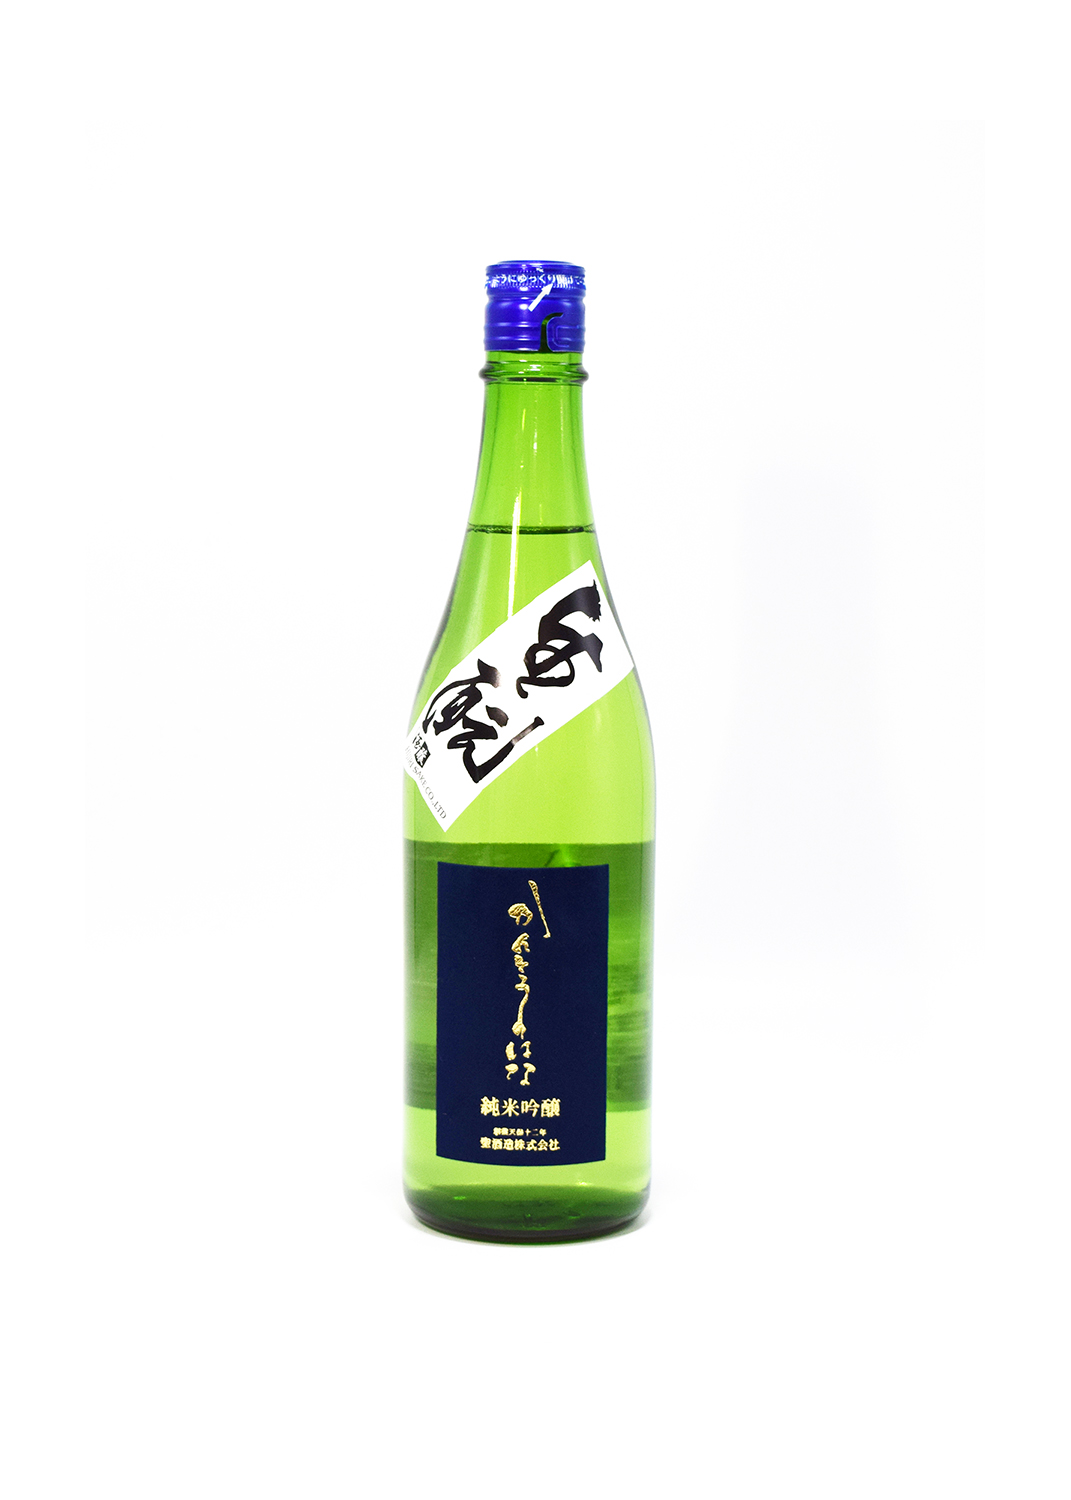 sake-gm-0001